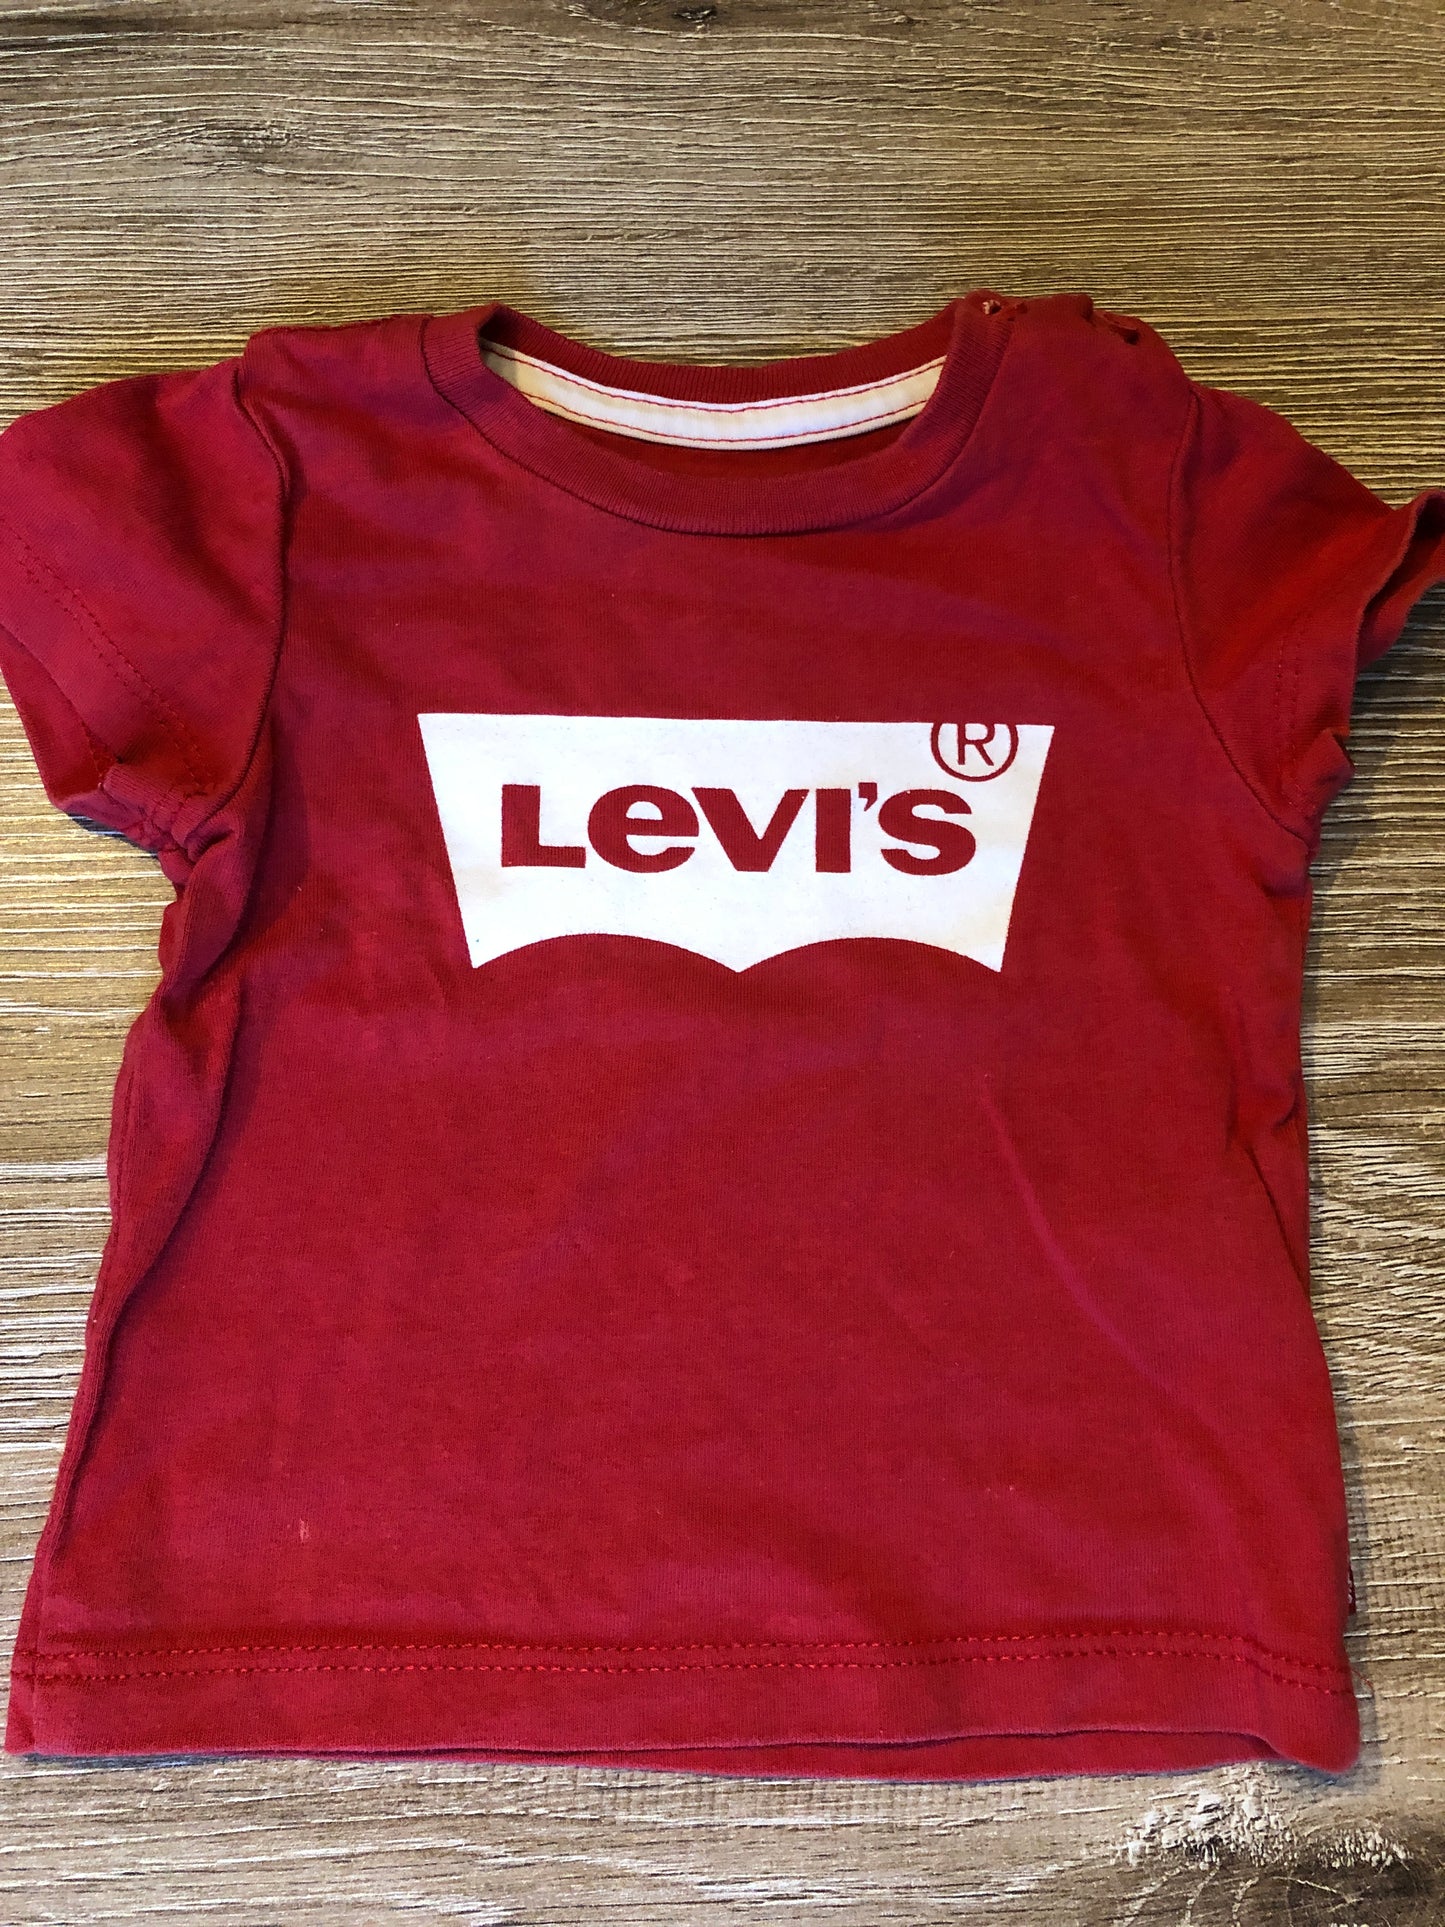 Levi's newborn T-shirt